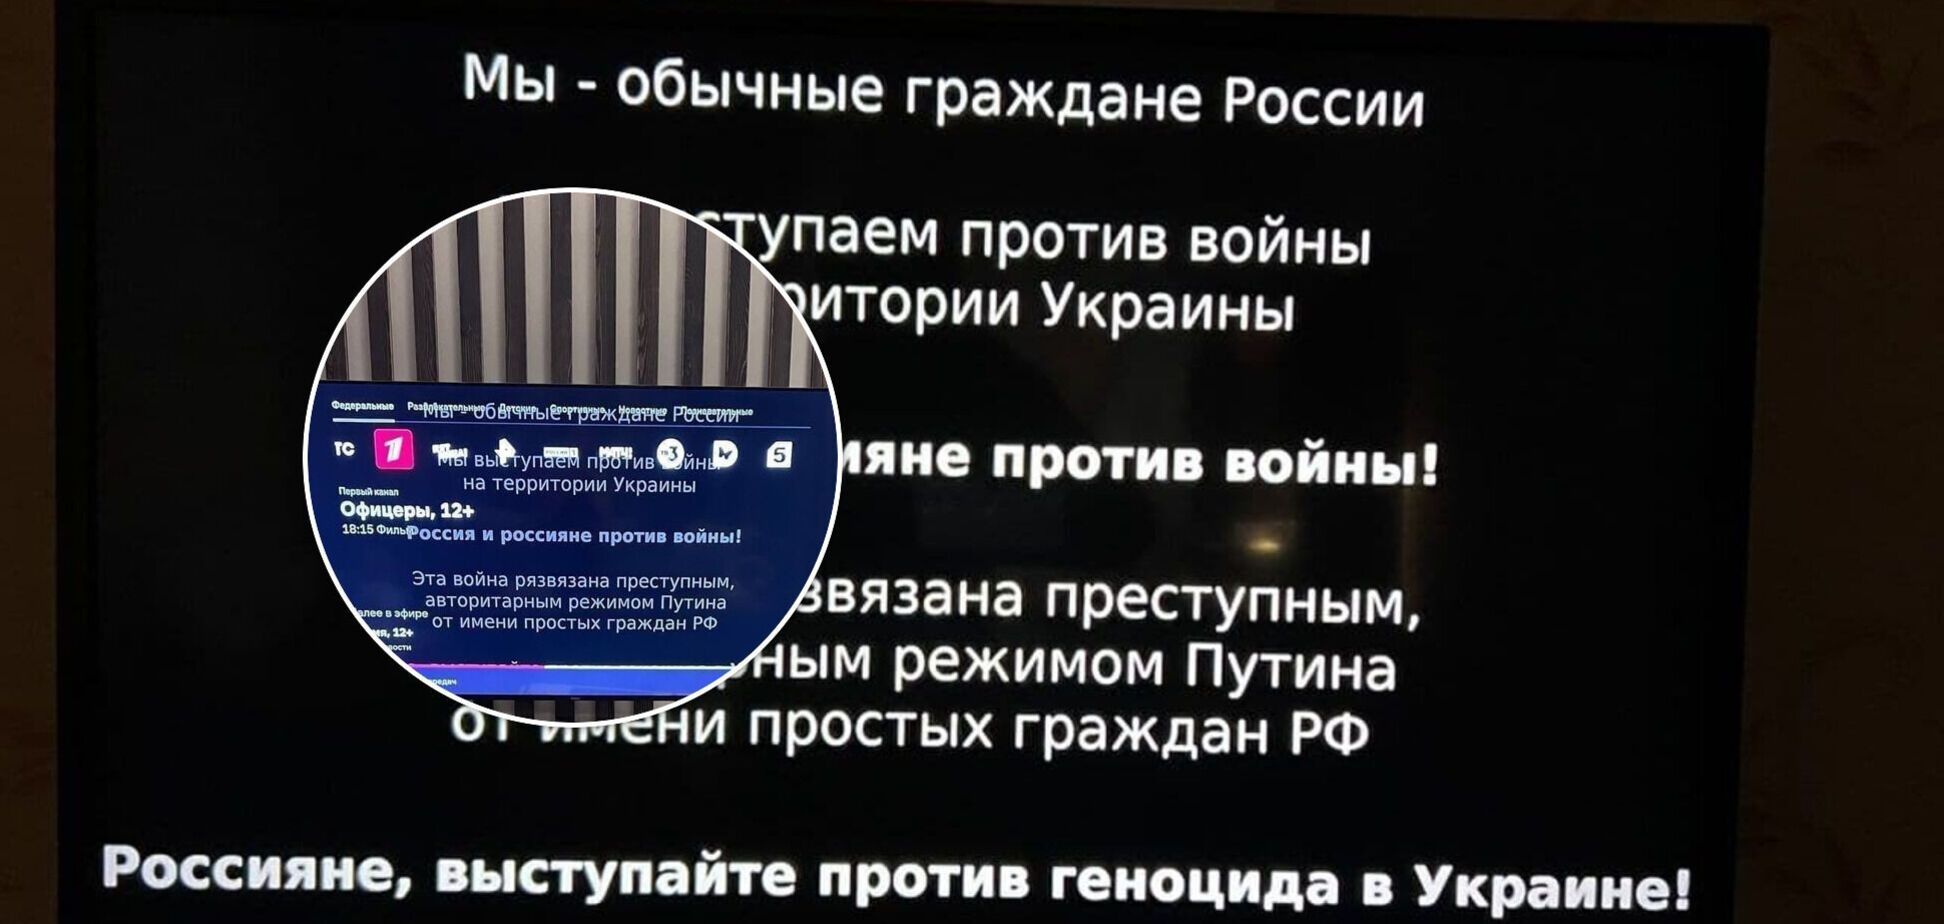 'Эта война развязана преступным режимом': на видеосервисах в РФ начали транслировать антивоенную агитацию. Фото и видео